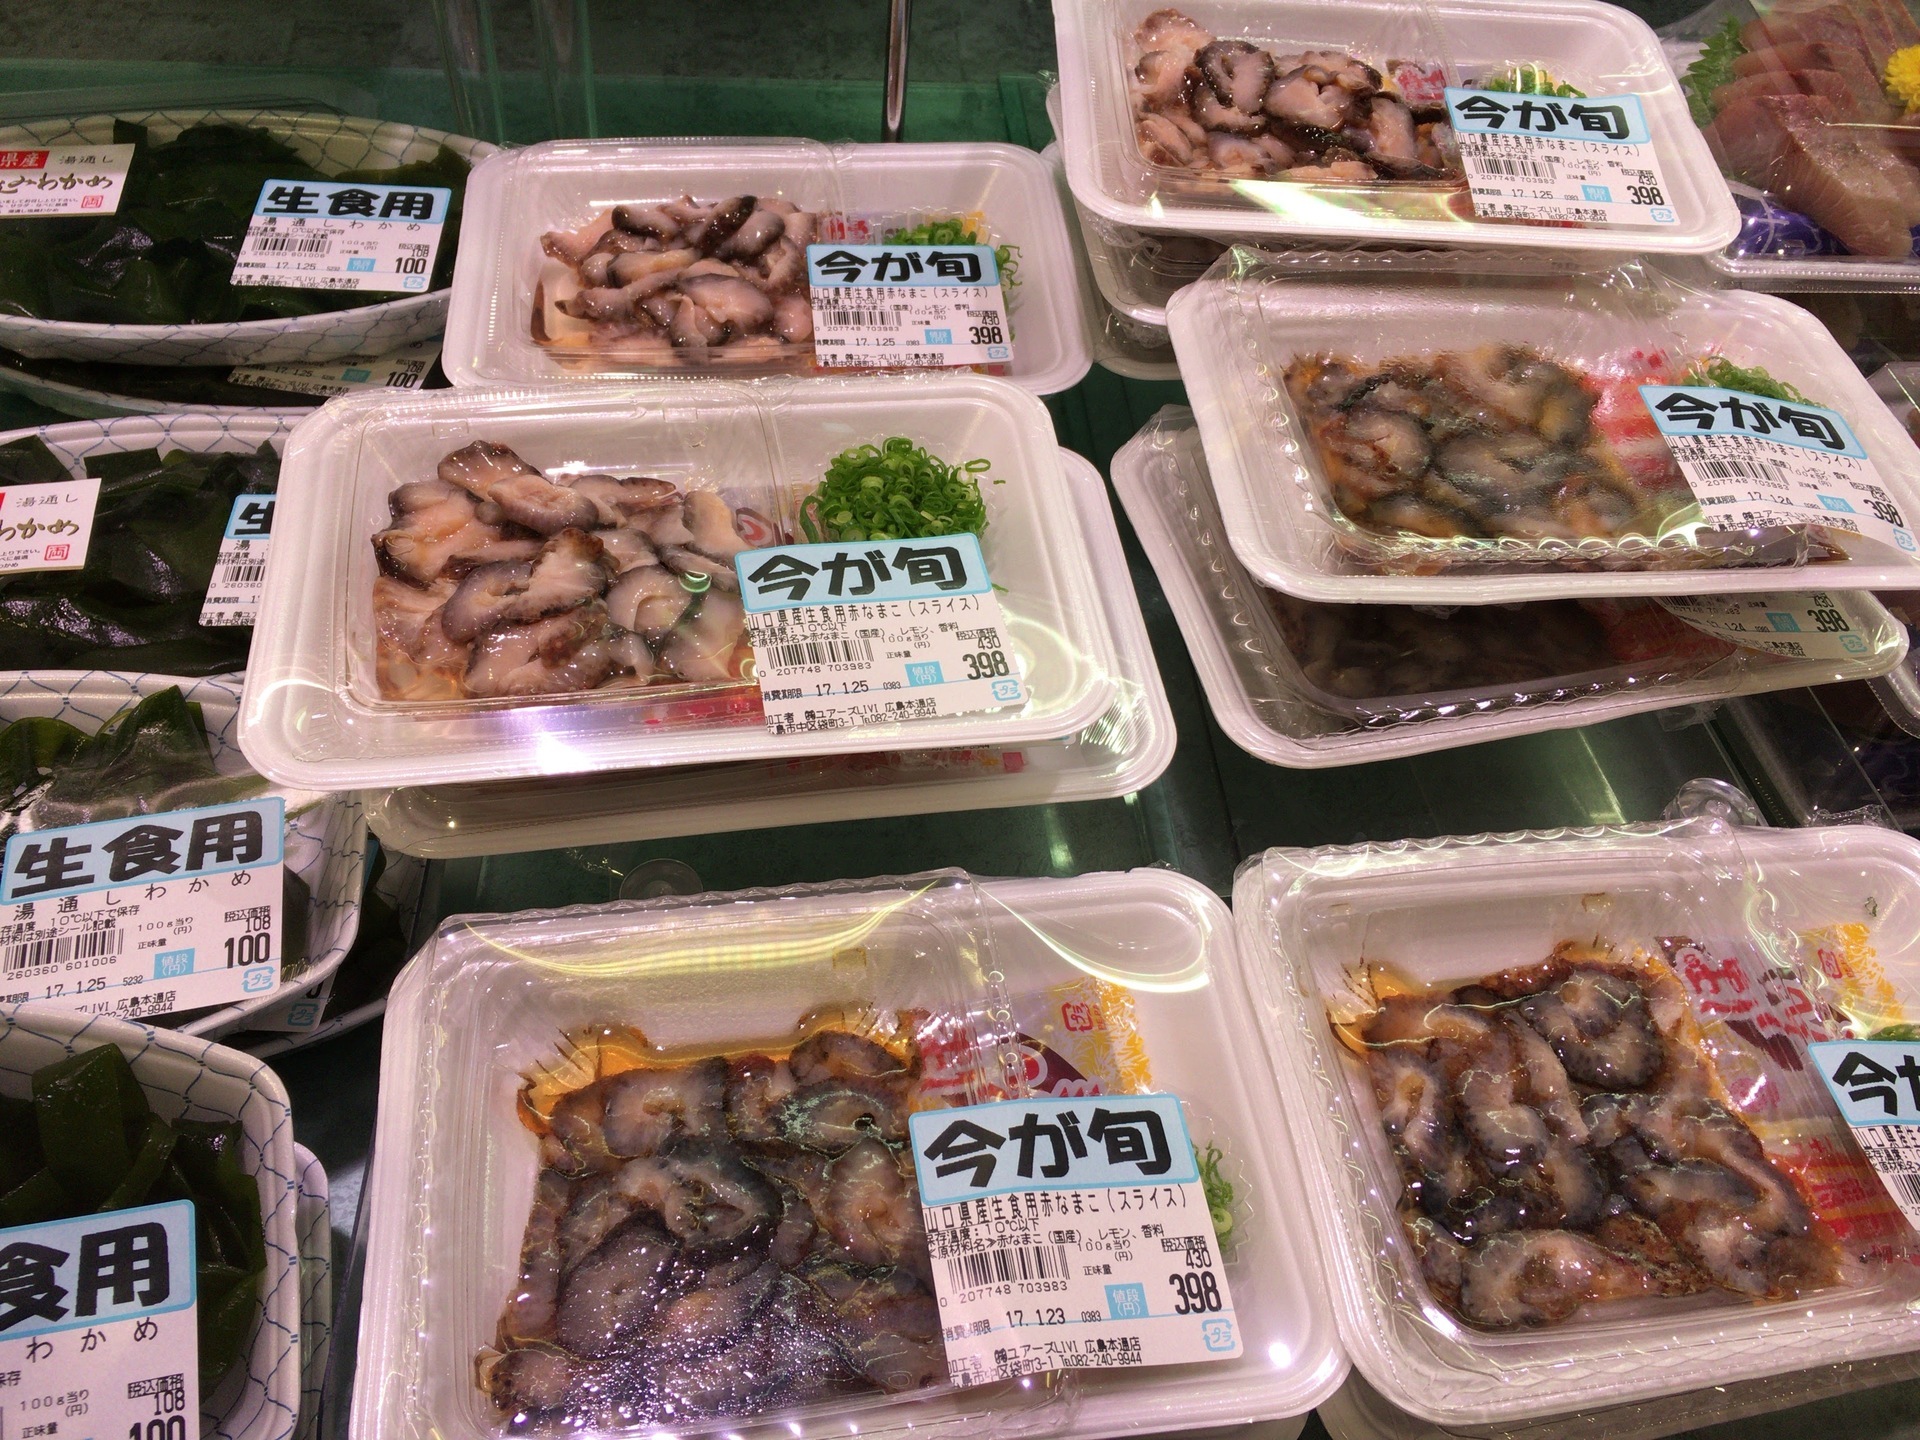 地元スーパー探検記 広島出身者が見つけた地元スーパーの見どころはここ ずぼらフードコーディネータの食をめぐる冒険